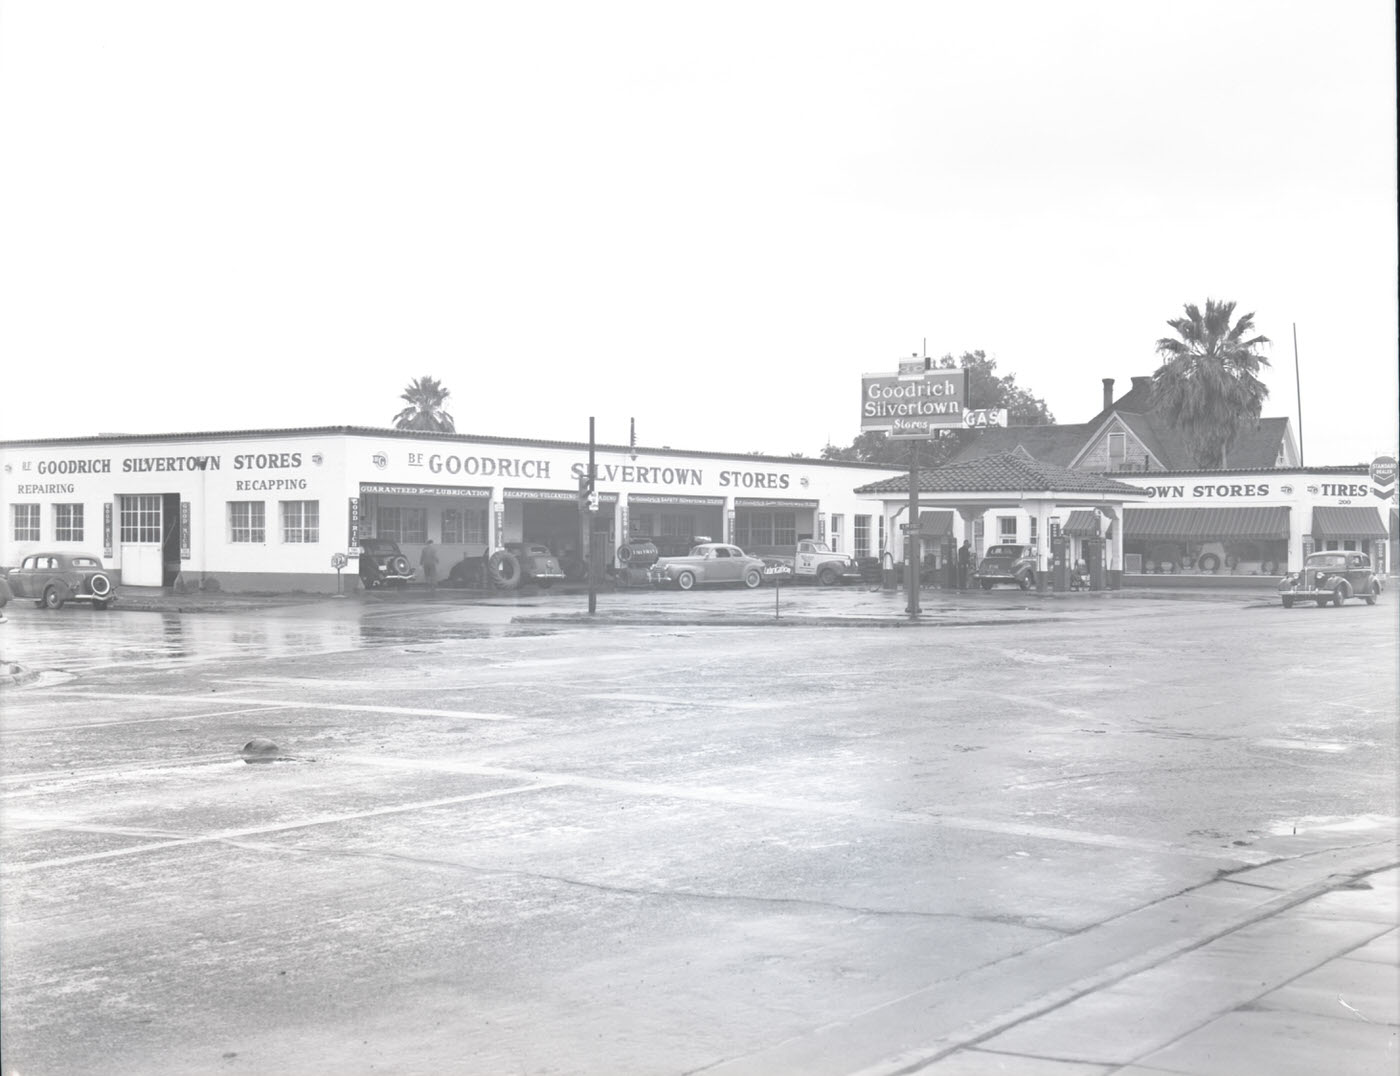 Goodrich Silvertown Stores Building Exterior, 1945